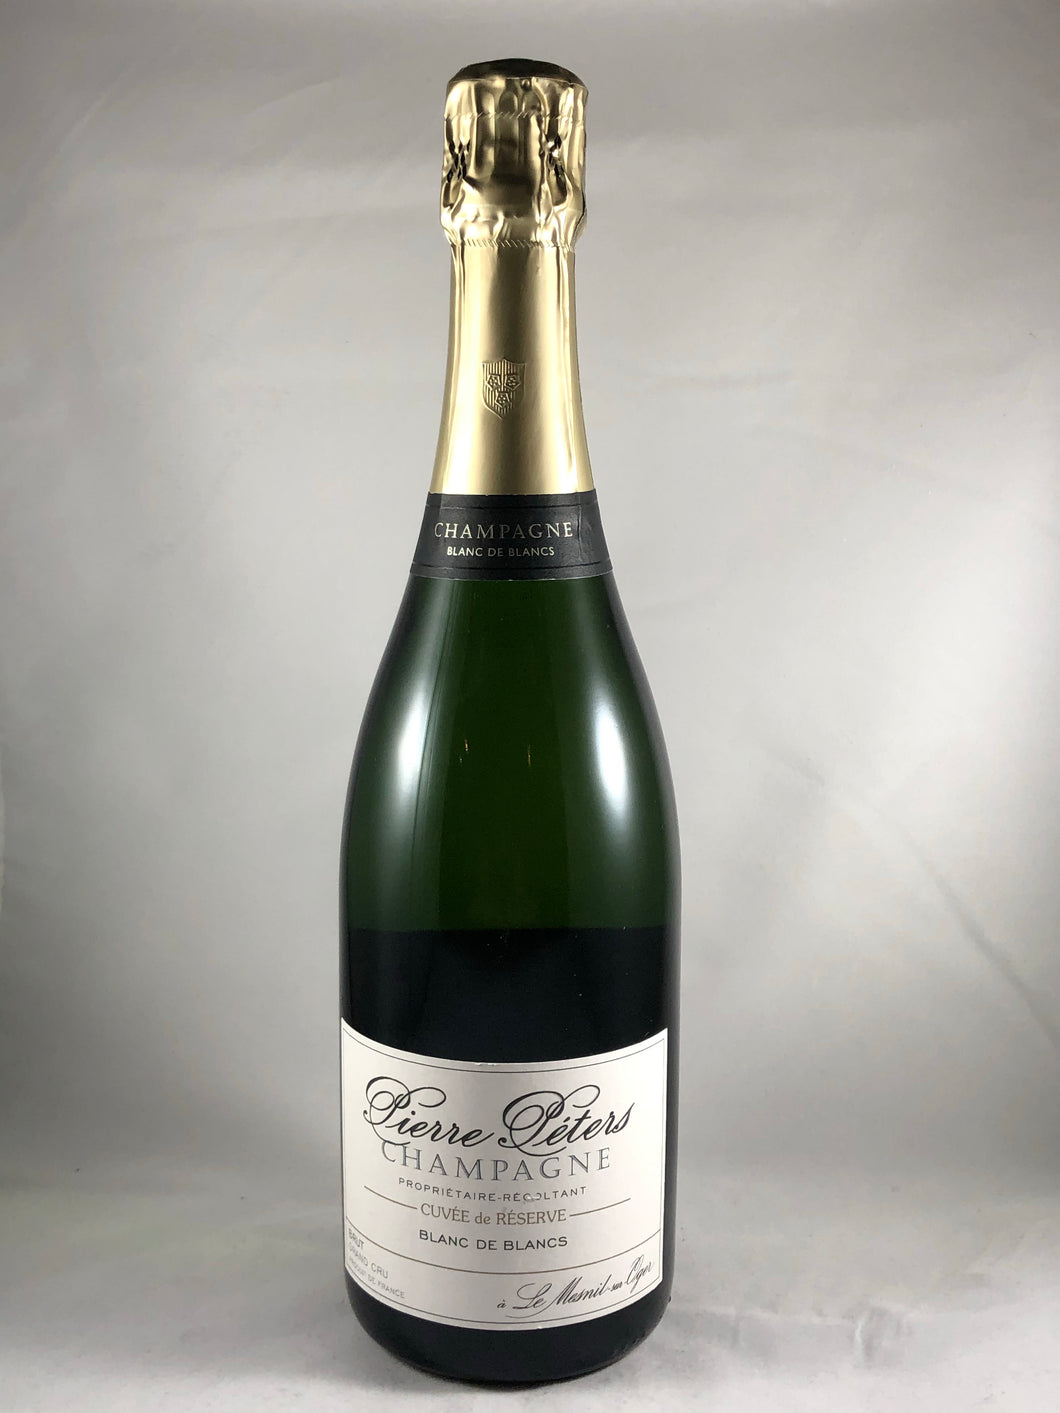 Pierre Peters Champagne Cuvée de Reserve Blanc de Blancs Brut Grand Cru, France